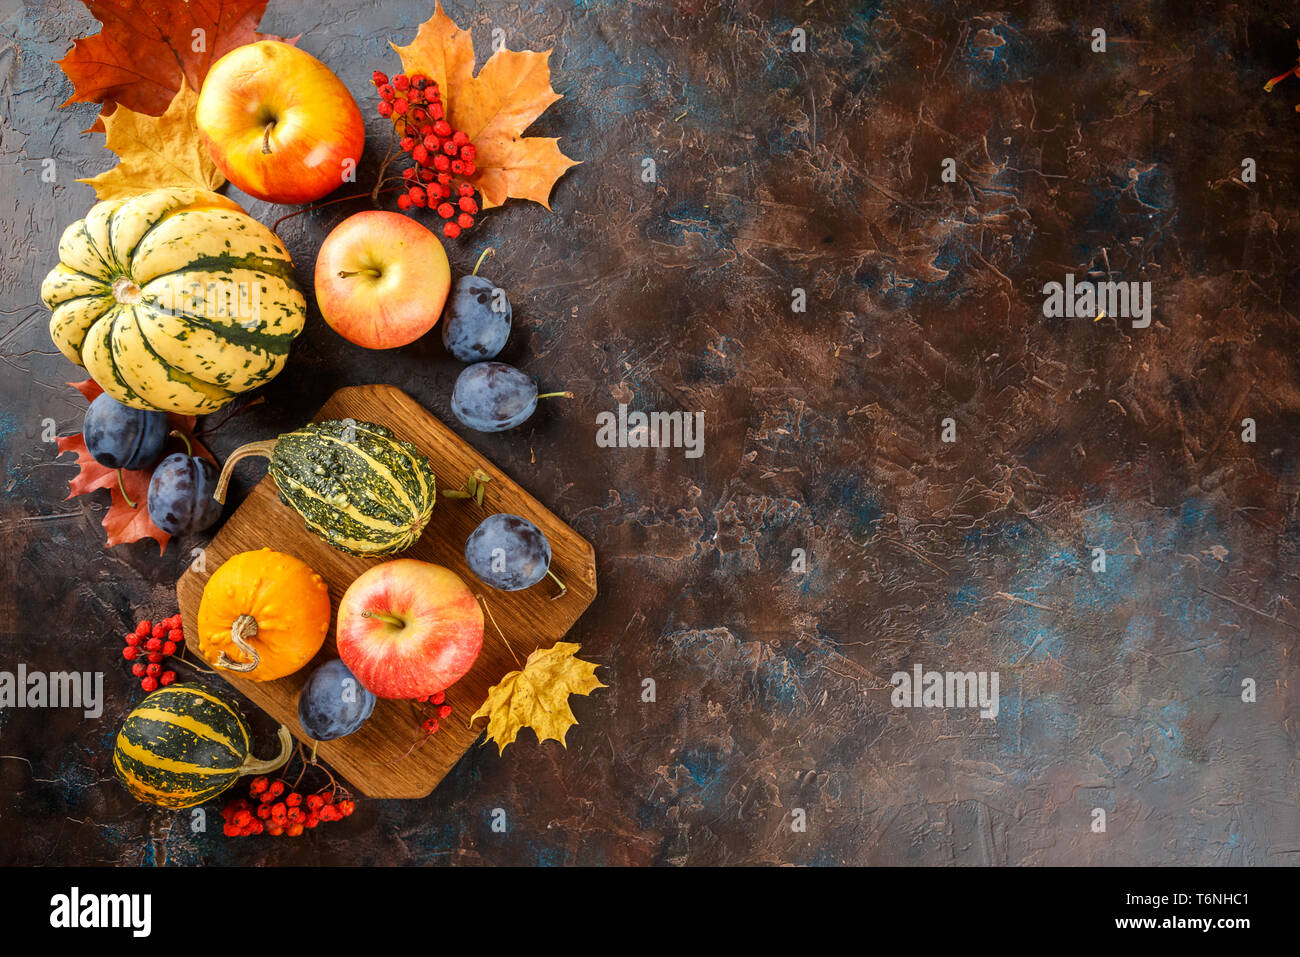 Autumn harvest stll life Stock Photo